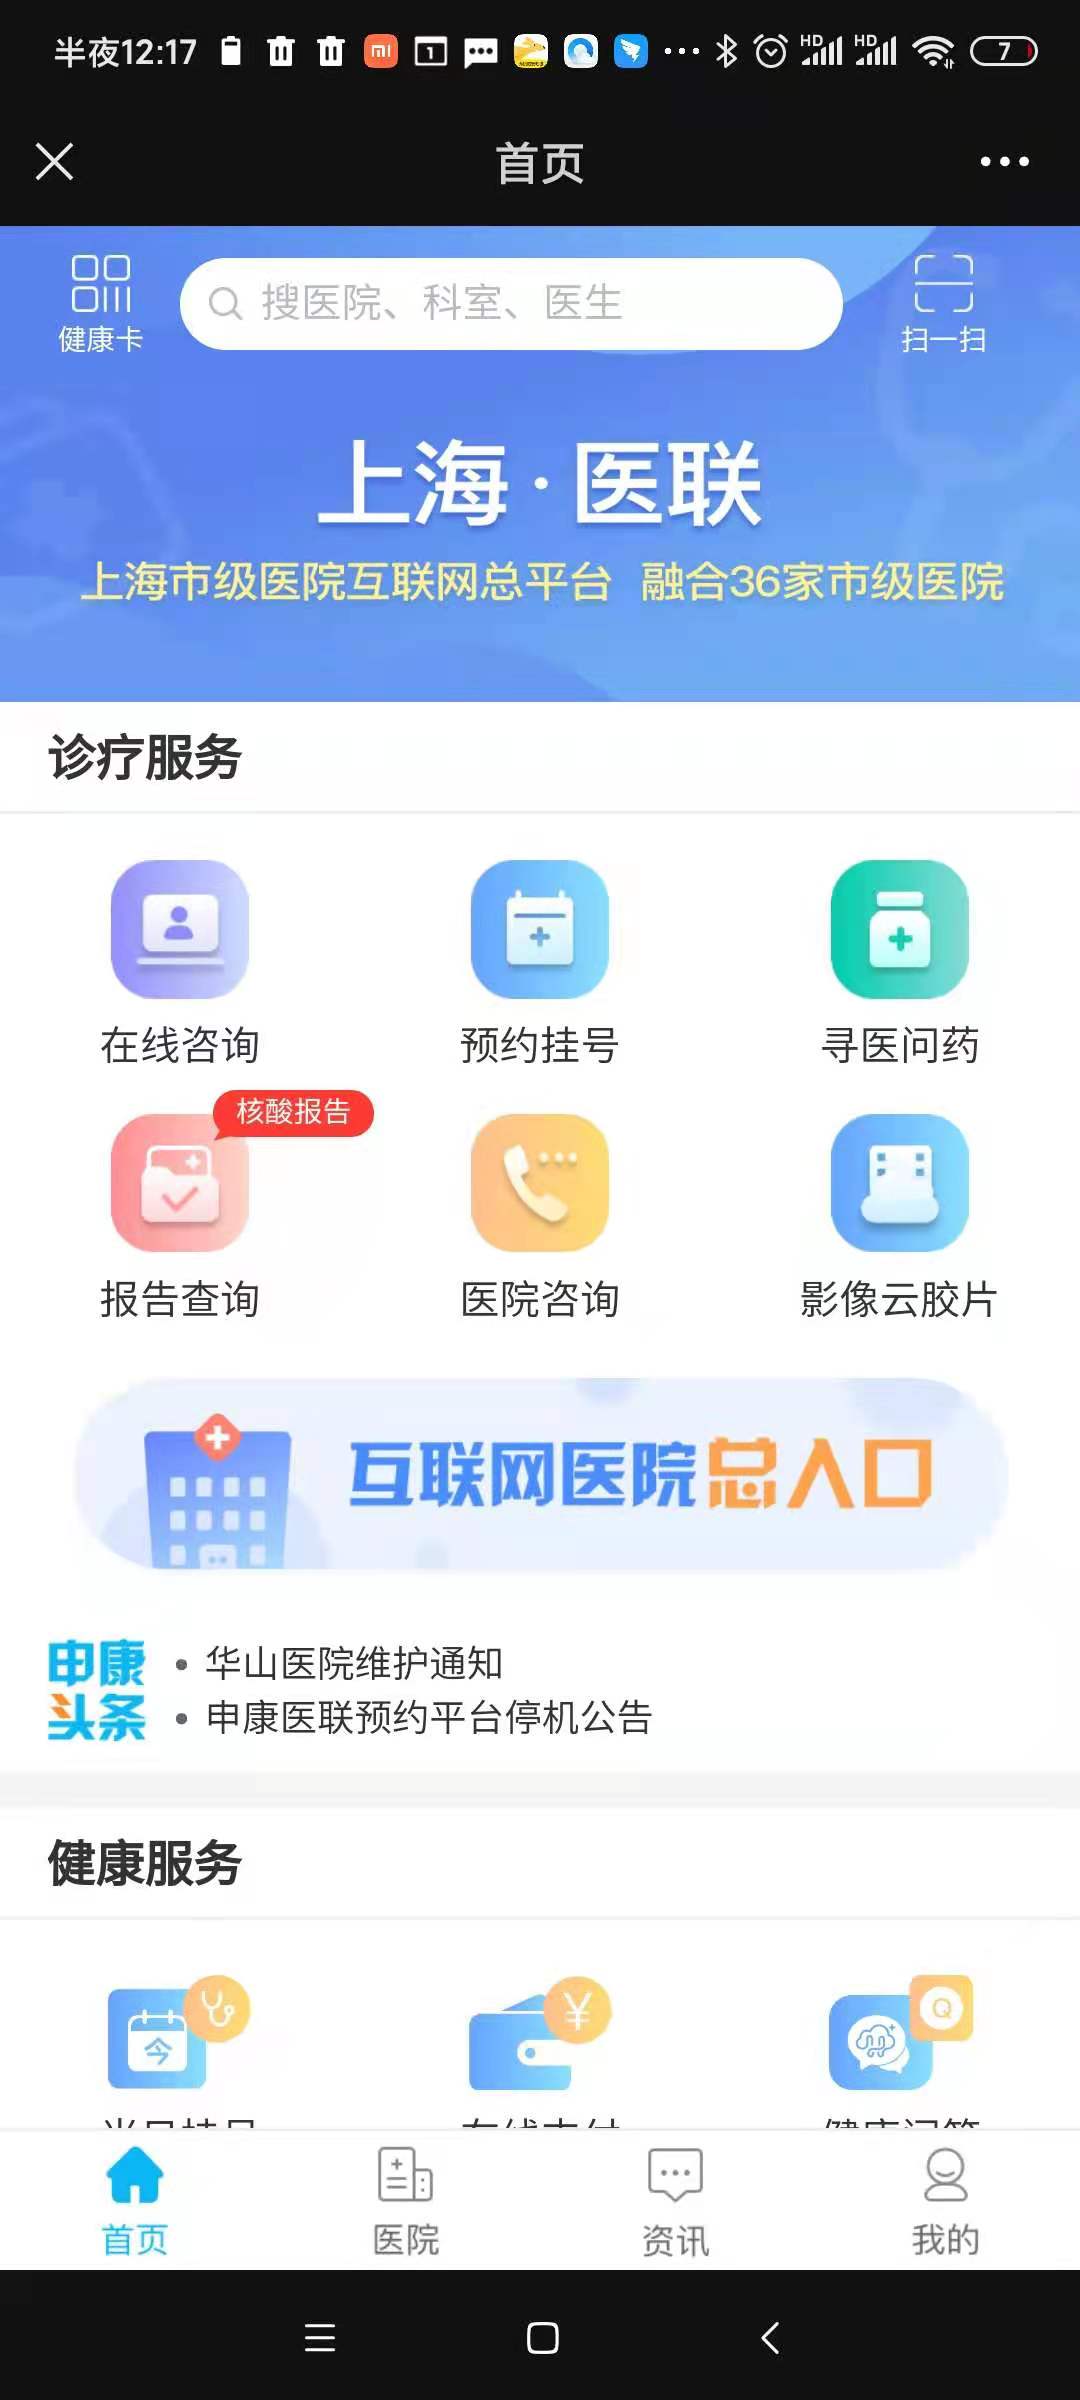 上海互联网总医院APP及微信公众号界面